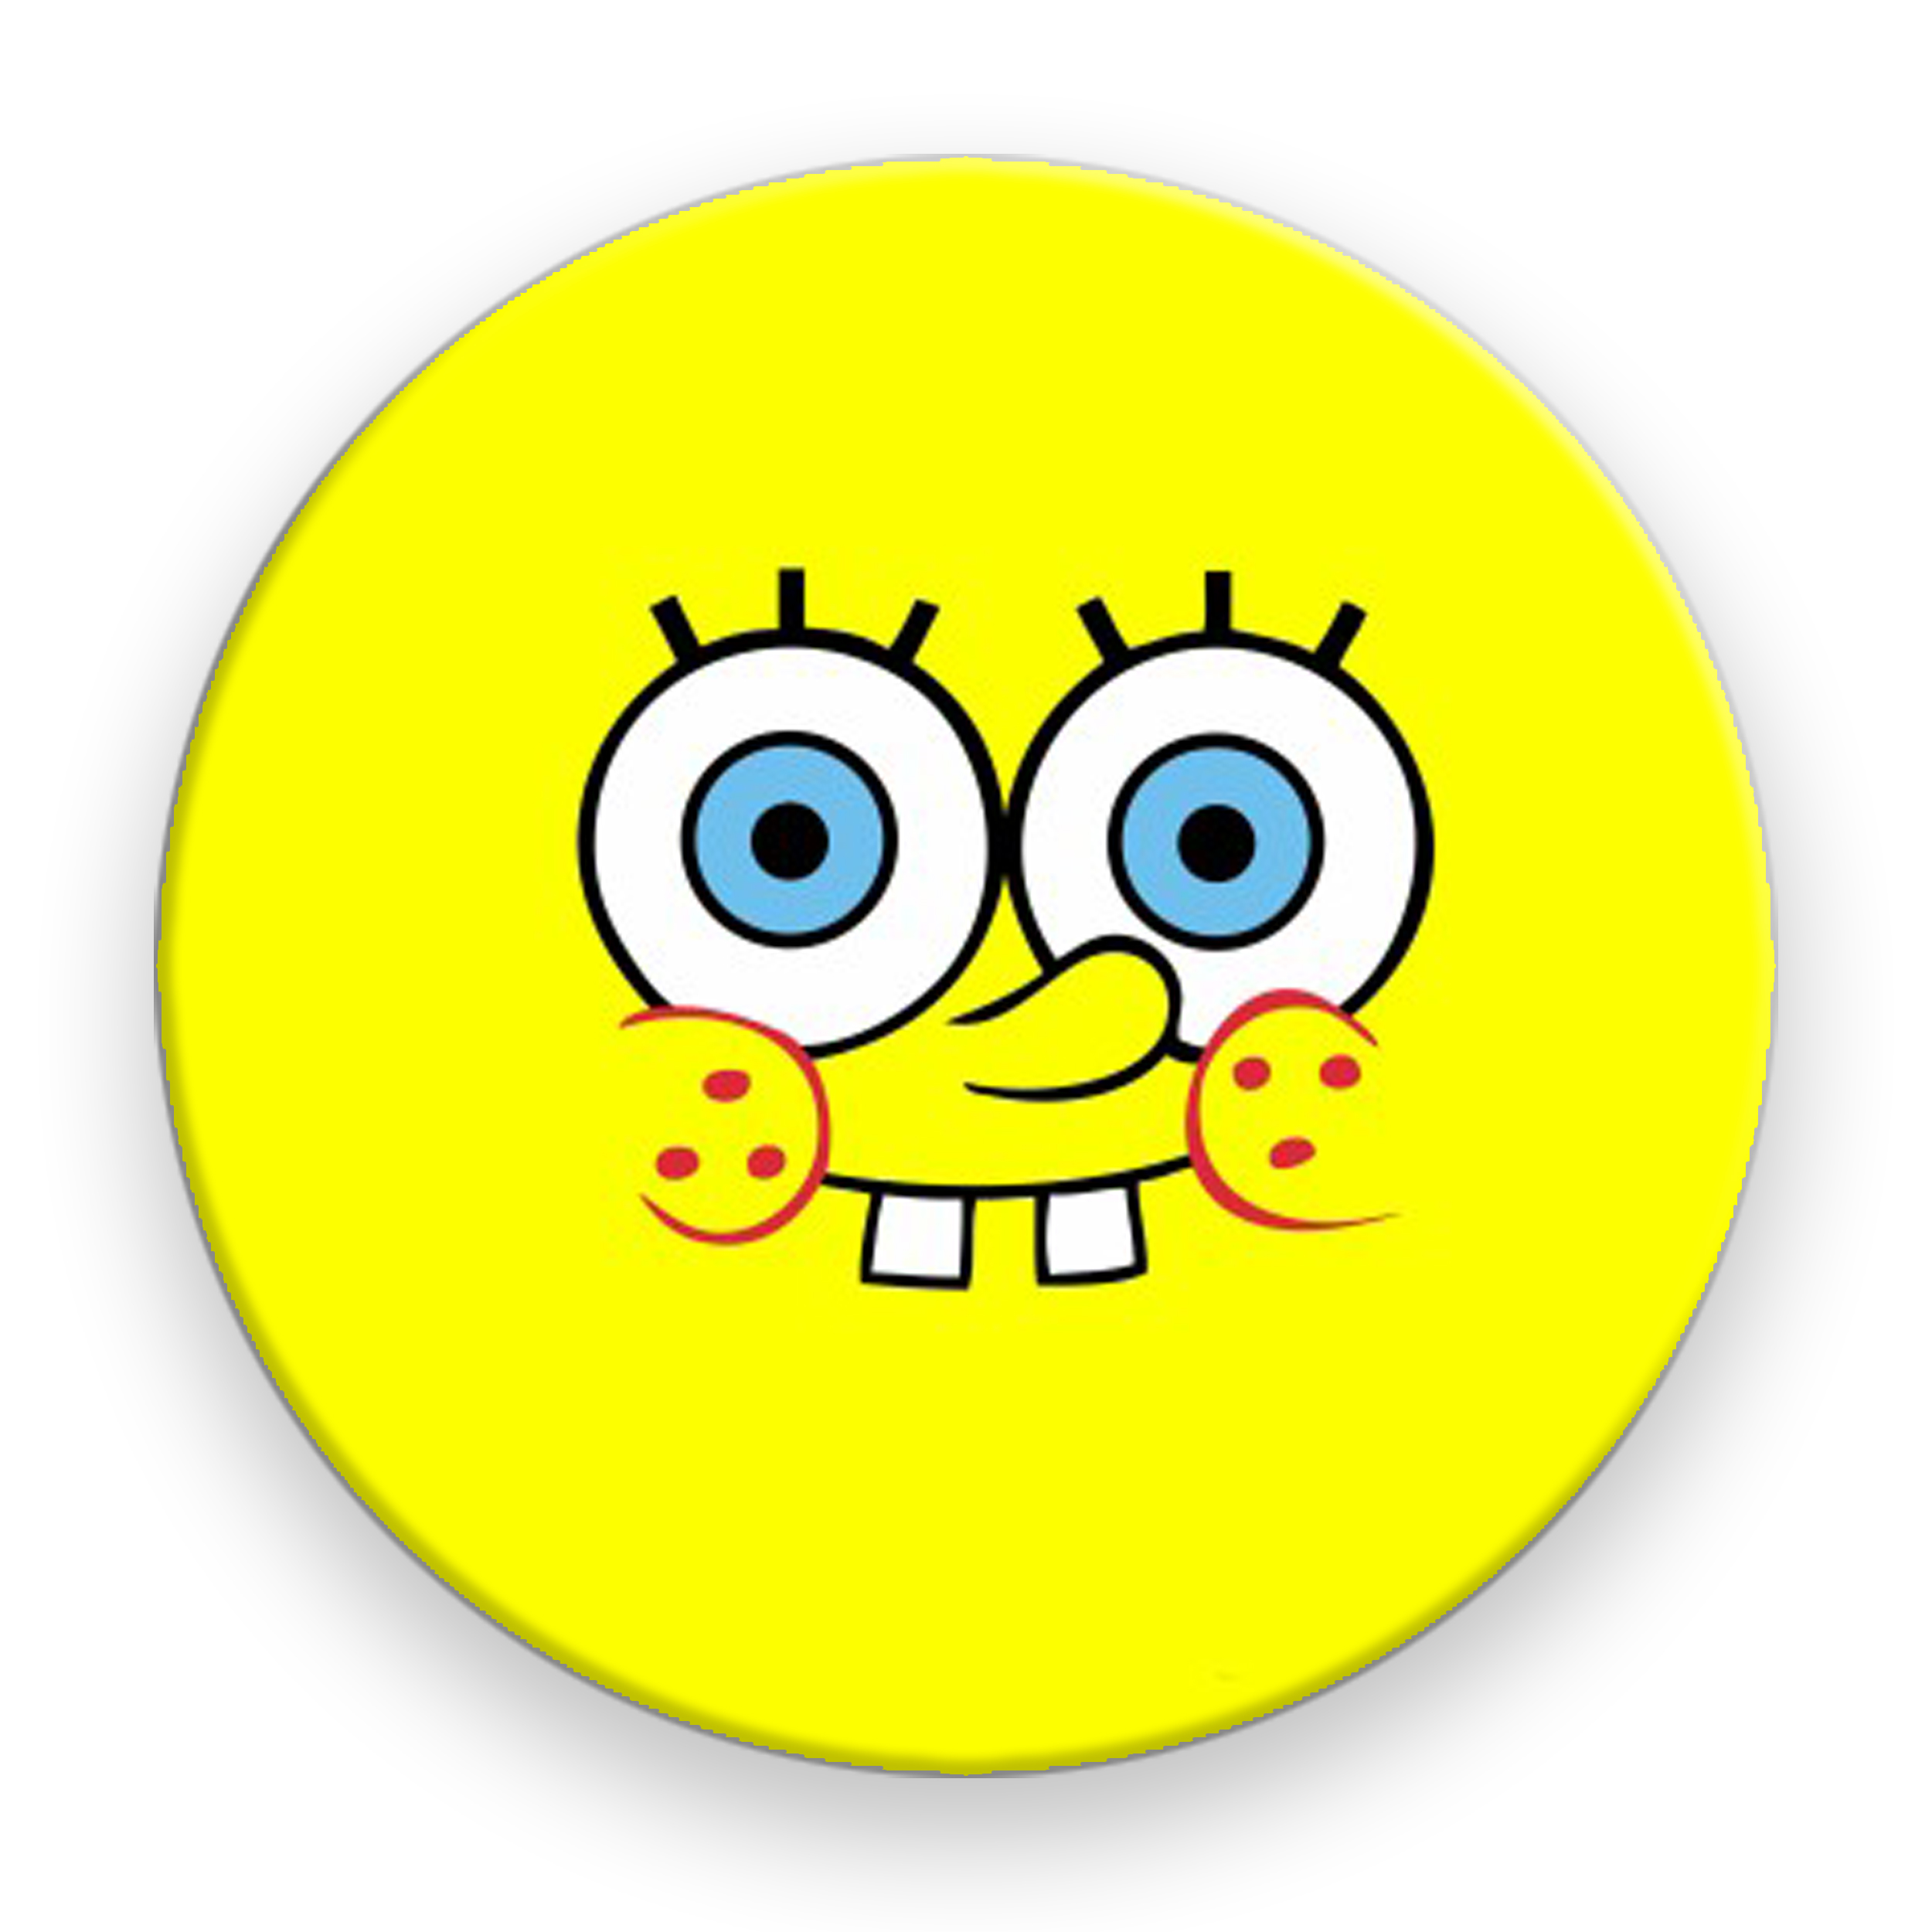 برچسب موبایل  مدل SpongeBob Face مناسب برای پایه نگهدارنده مغناطیسی